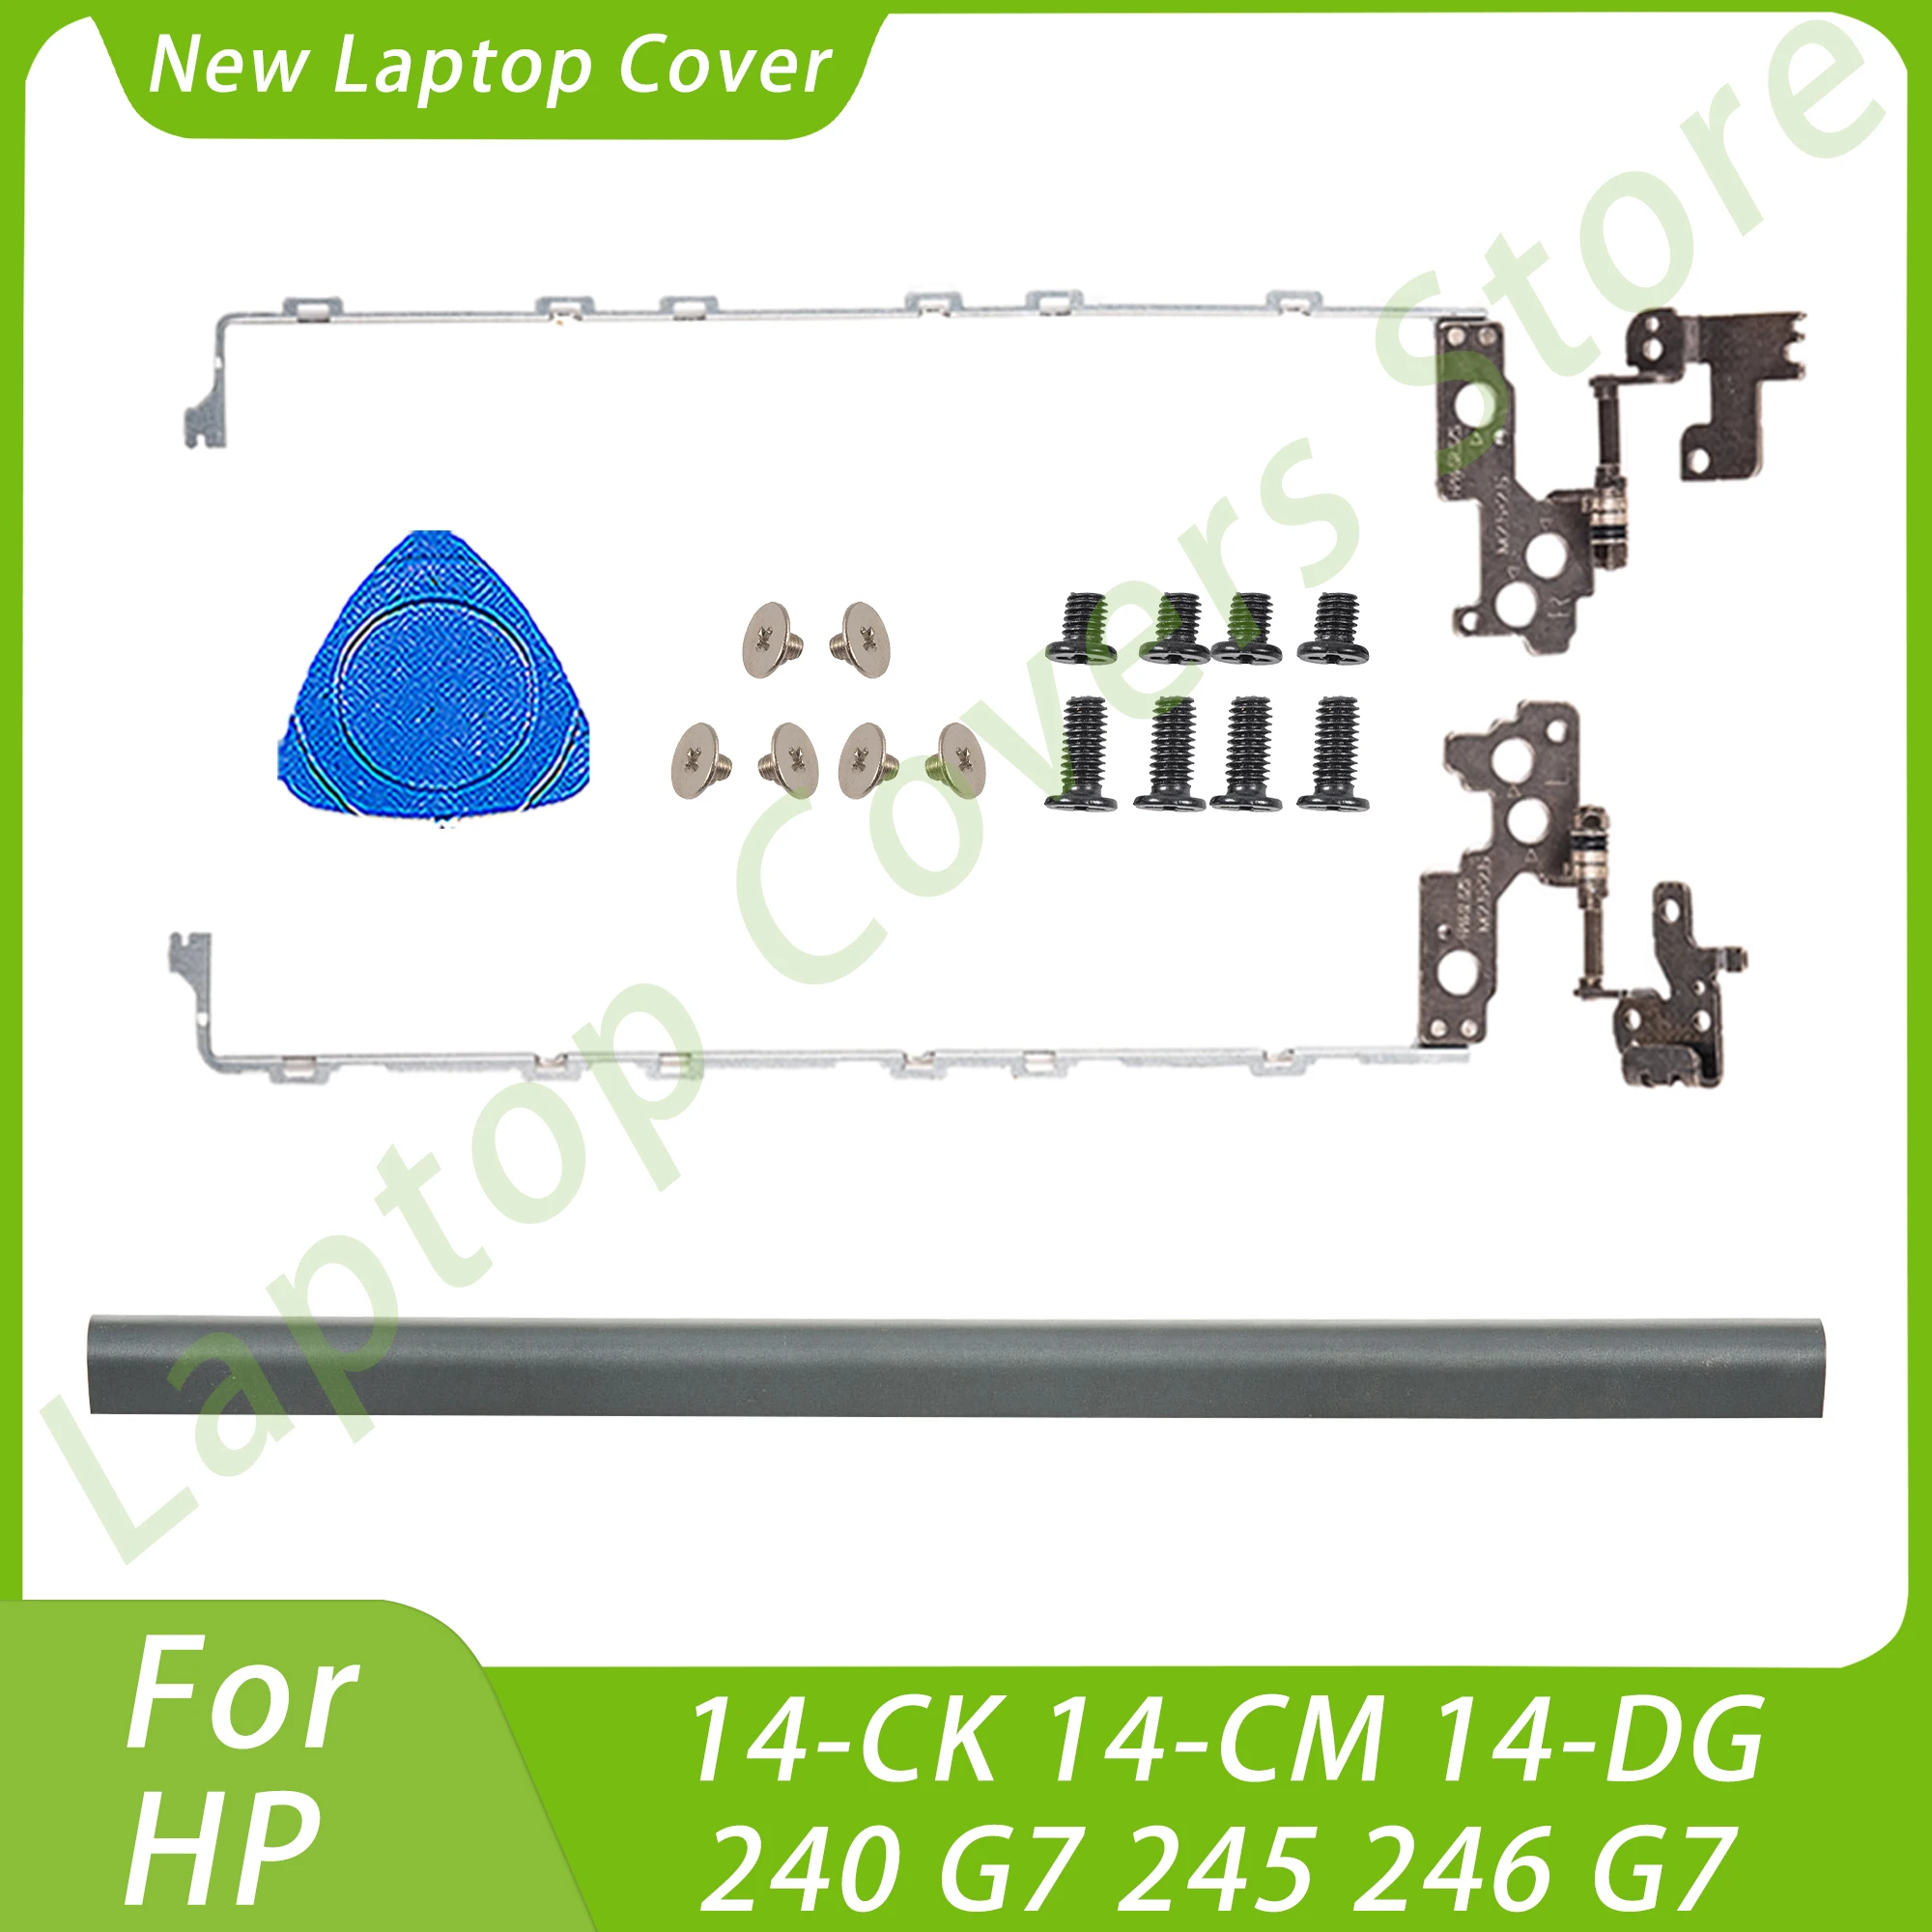 

Новые ЖК-петли Hingecover для HP 14-CK 14-CM 14-DG 240 G7 245 246 G7 цвет TPN-I131 серый/черный запасные части для ноутбуков